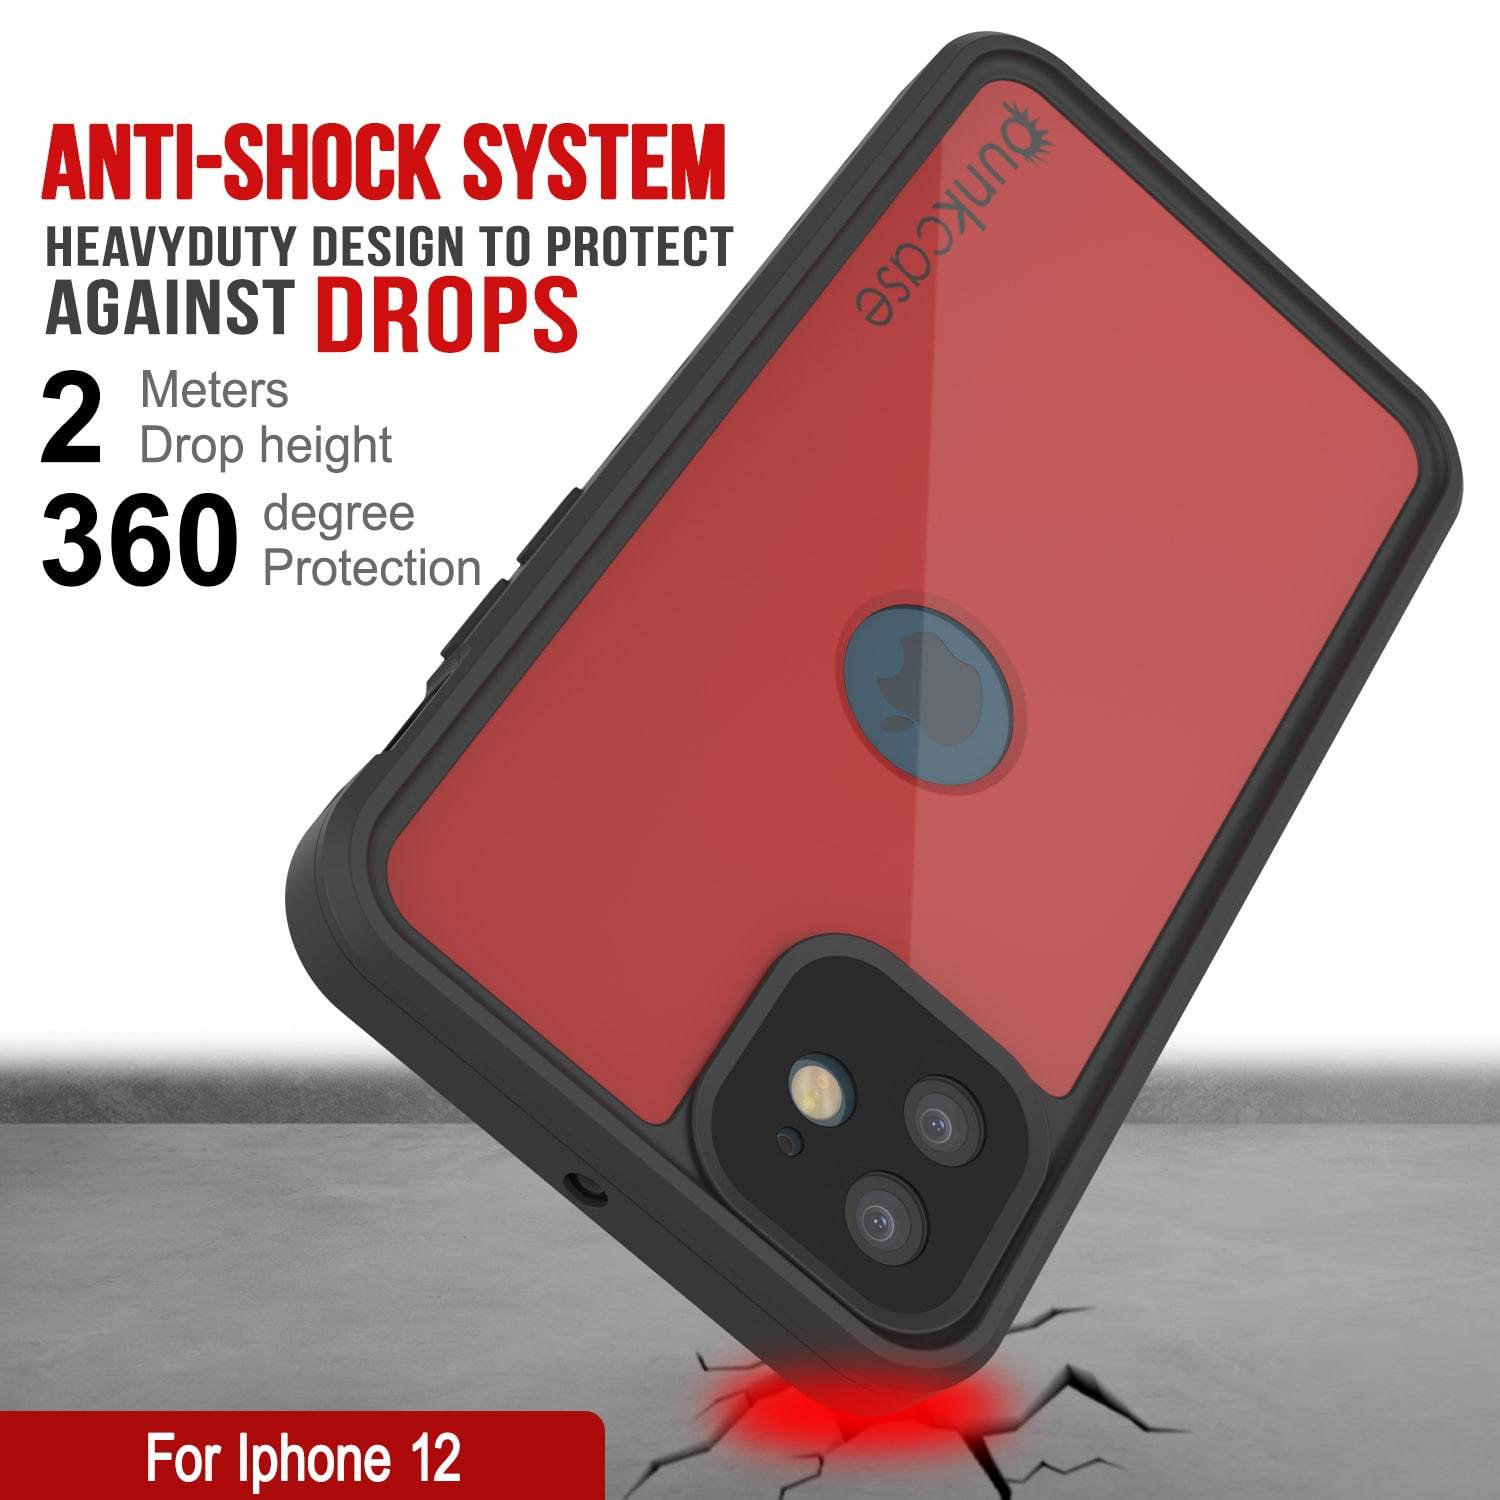 iPhone 12 Waterproof IP68 Case, Punkcase [Red] [StudStar Series] [Slim Fit]